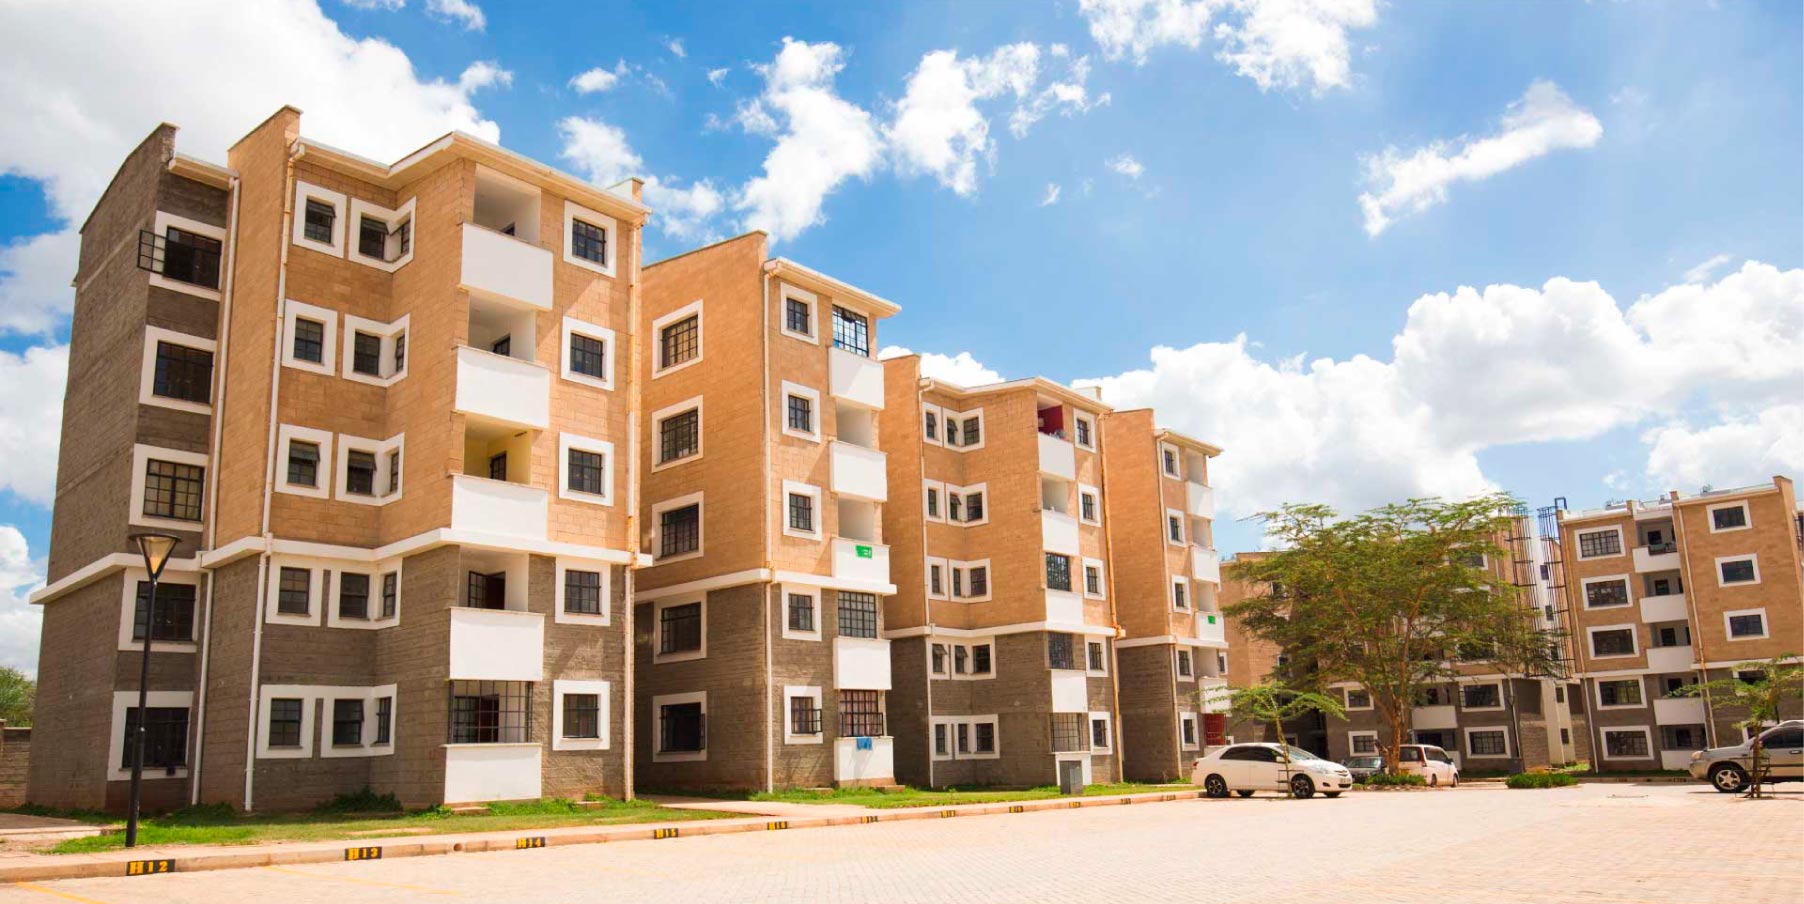 Kenyans inspired to tackle housing shortage